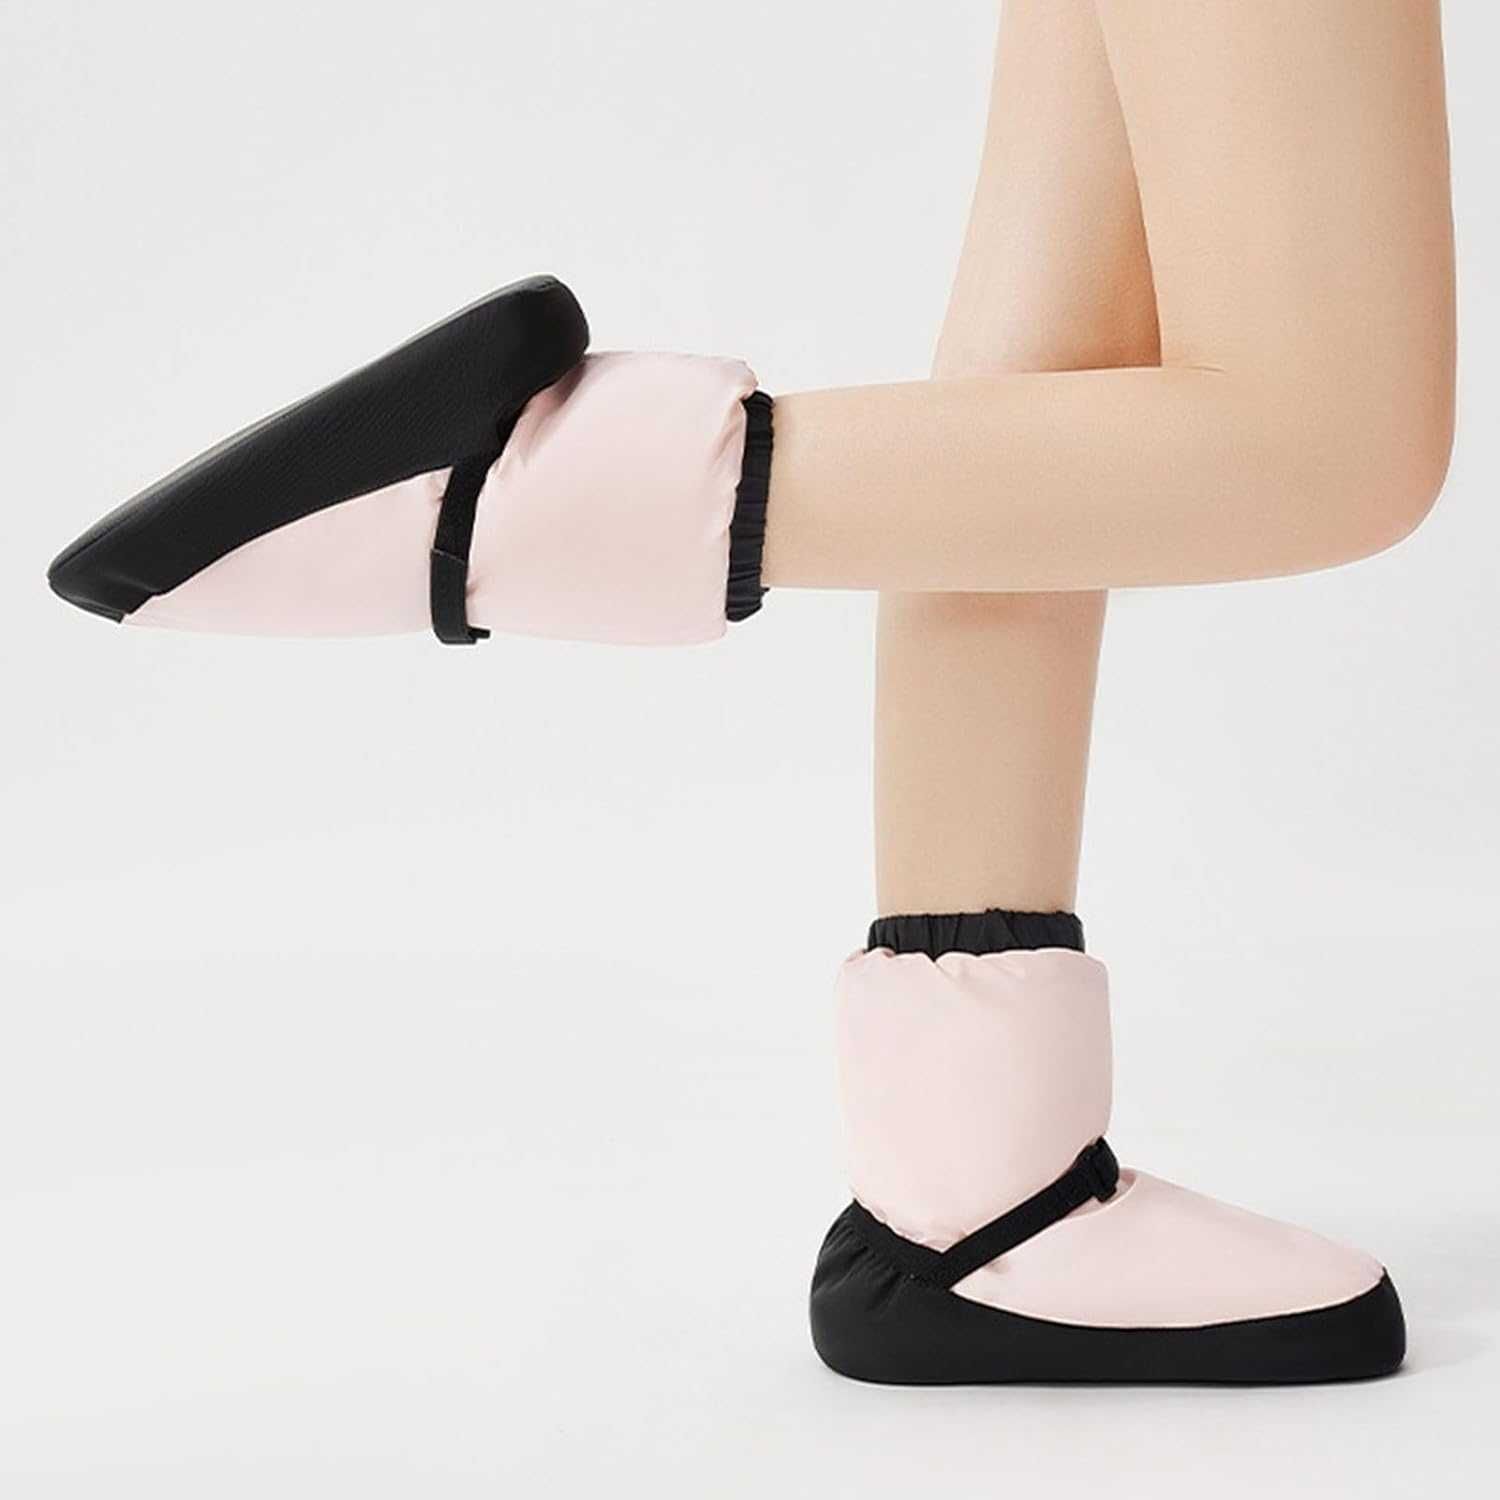 ciepłe buty baletowe -kolor różowy, rozm  L